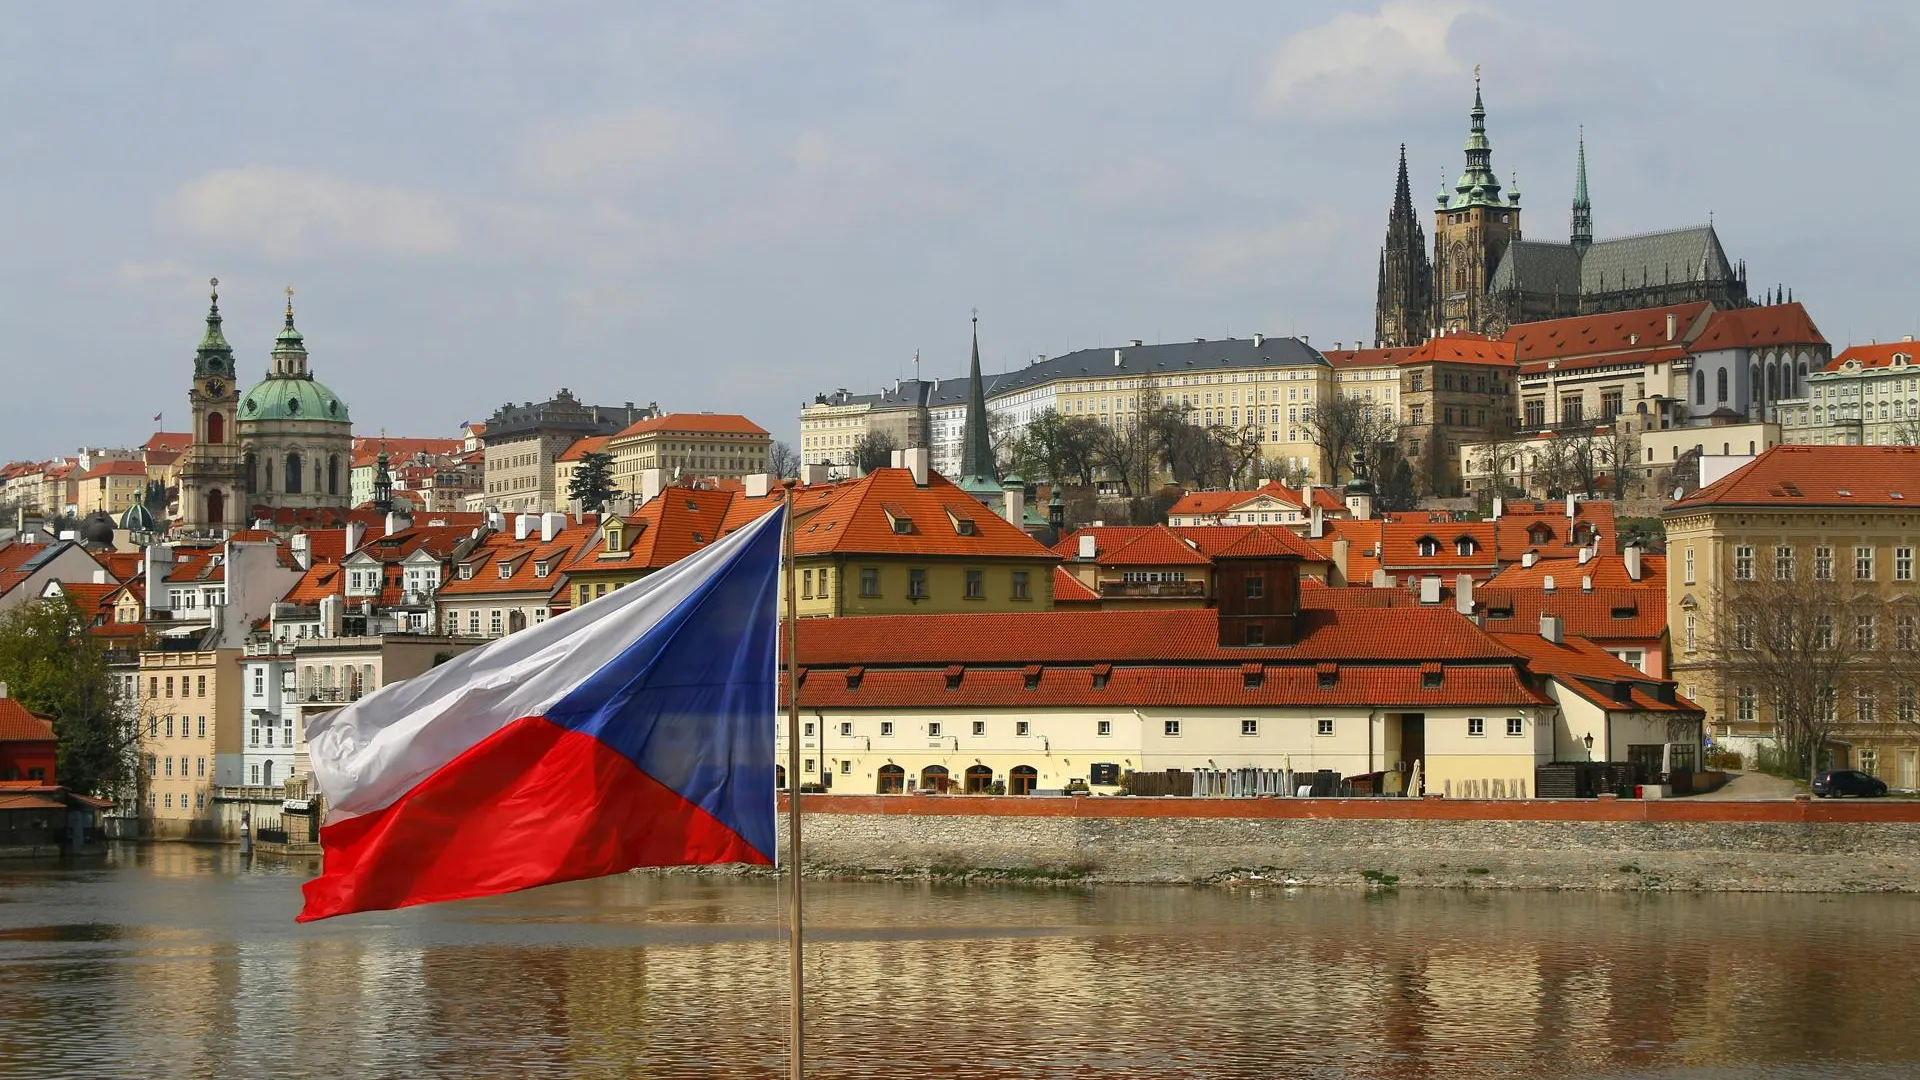 Чехия официально отозвала посла из России